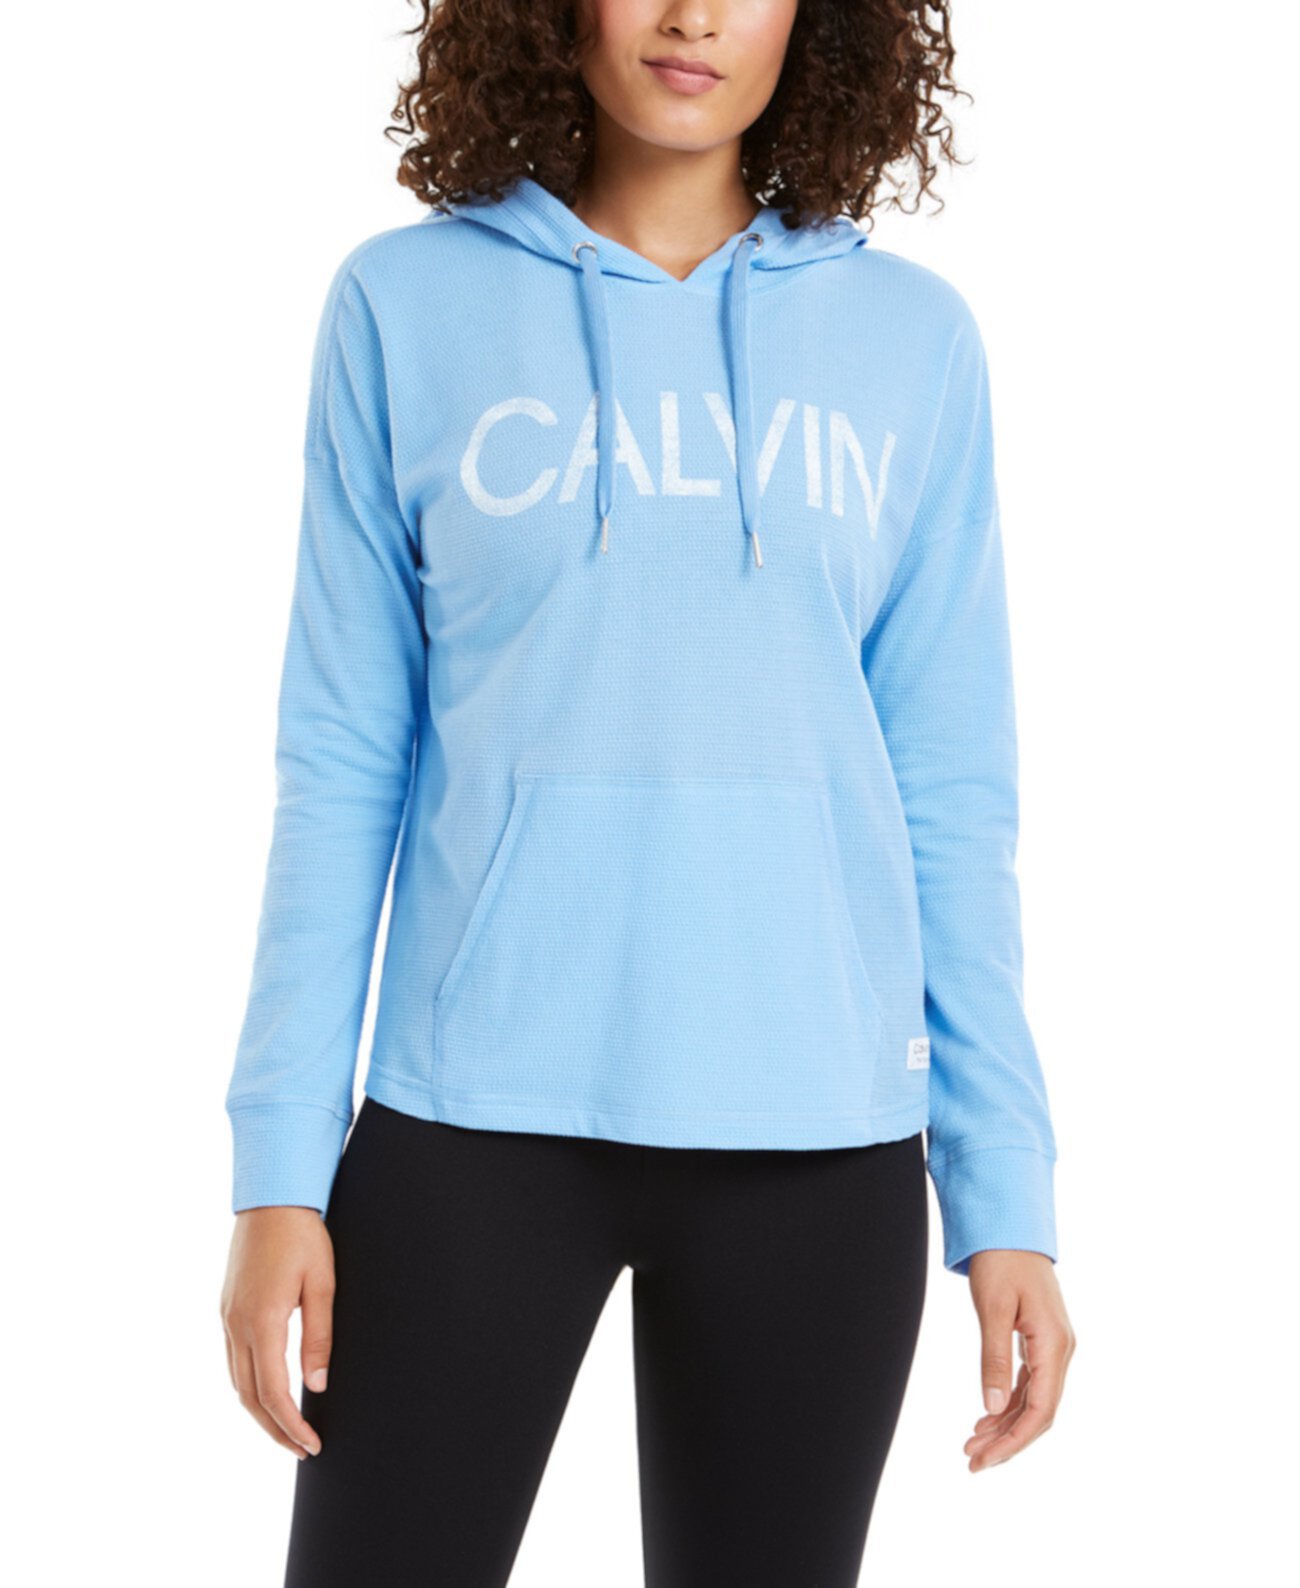 Балахон с логотипом Calvin Klein